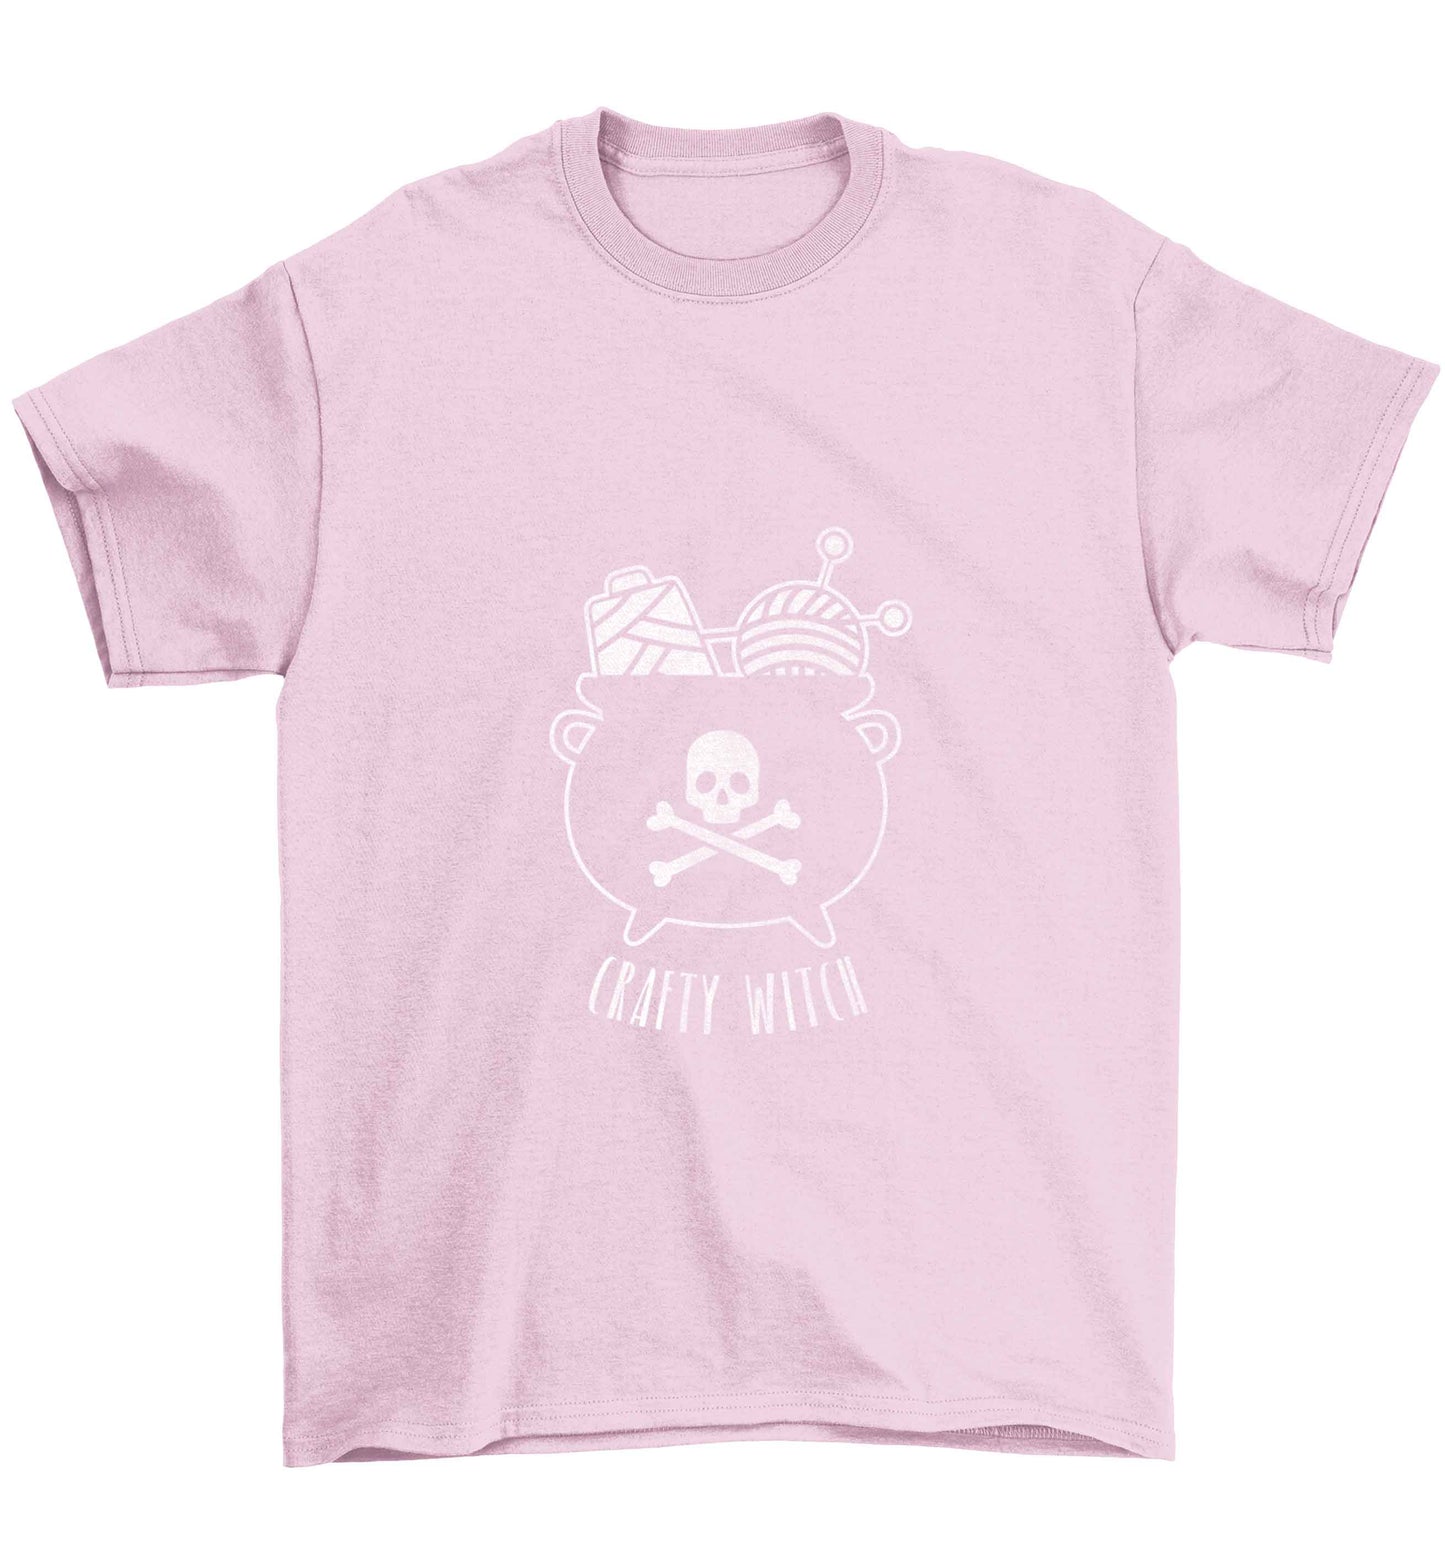 Crafty witch Children's light pink Tshirt 12-13 Years